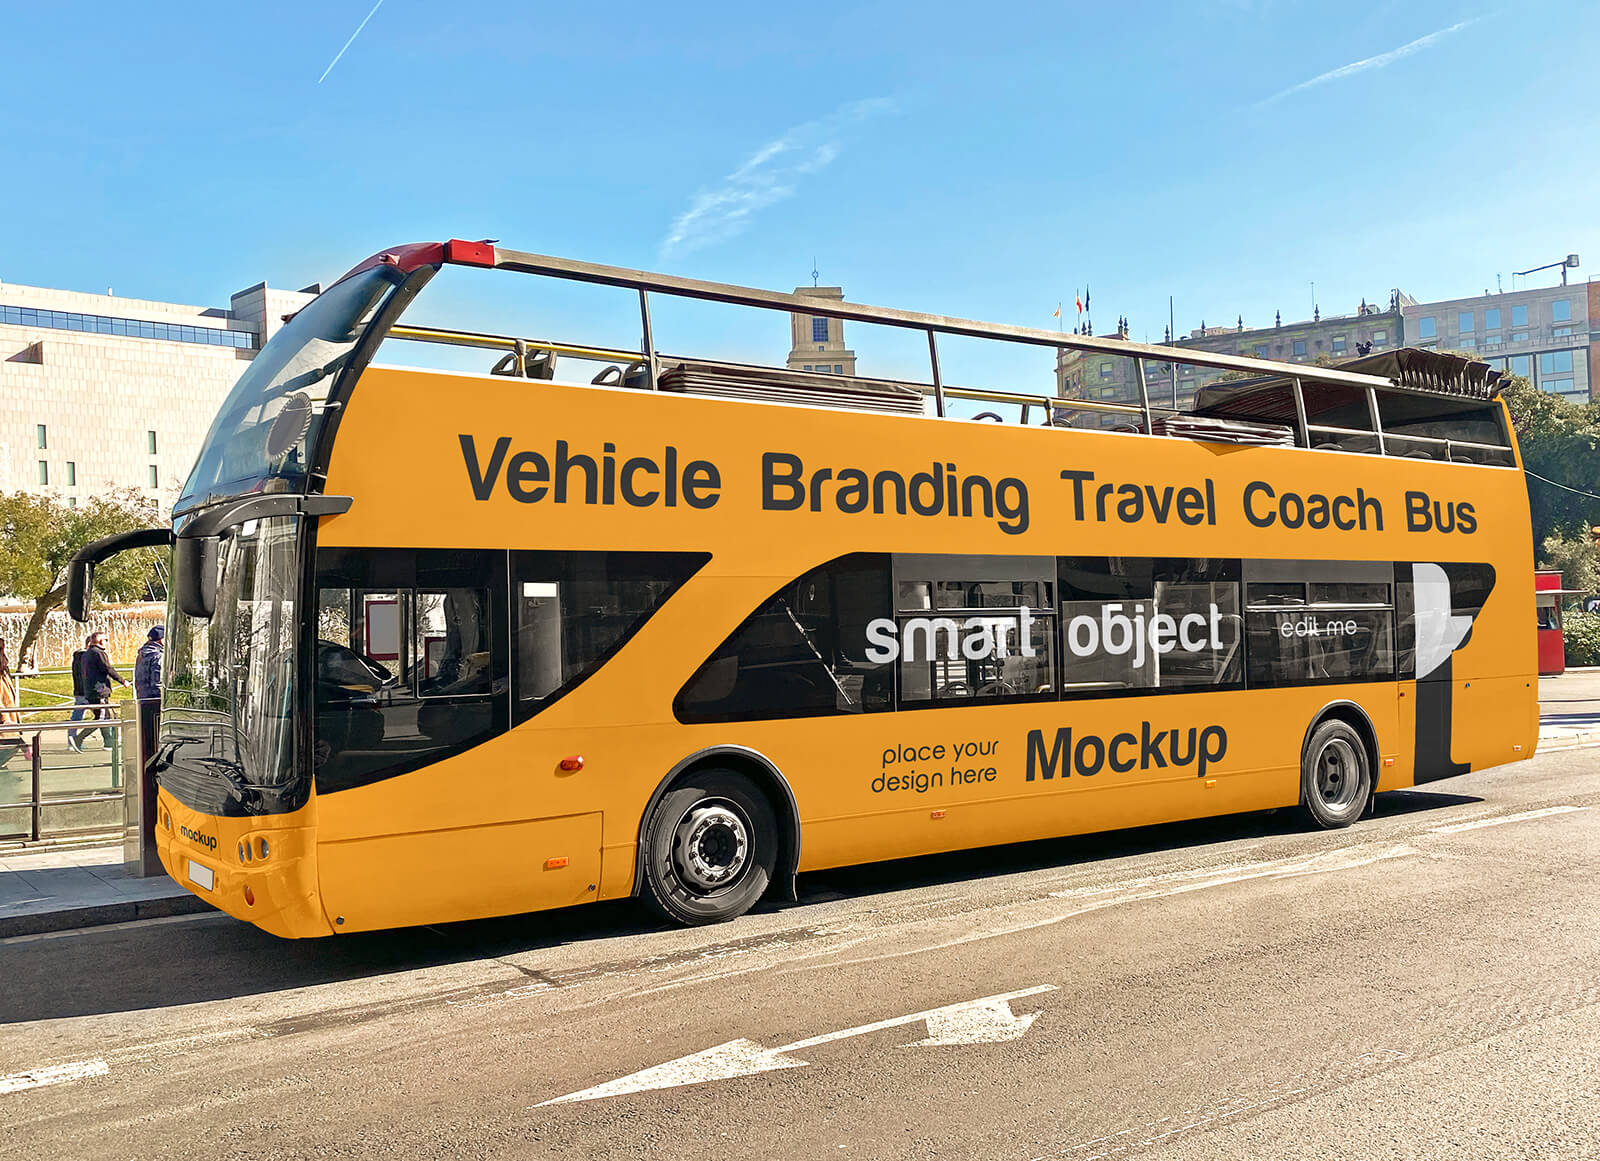 Marca de la marca del vehículo Mockup de autobuses del entrenador de viajes